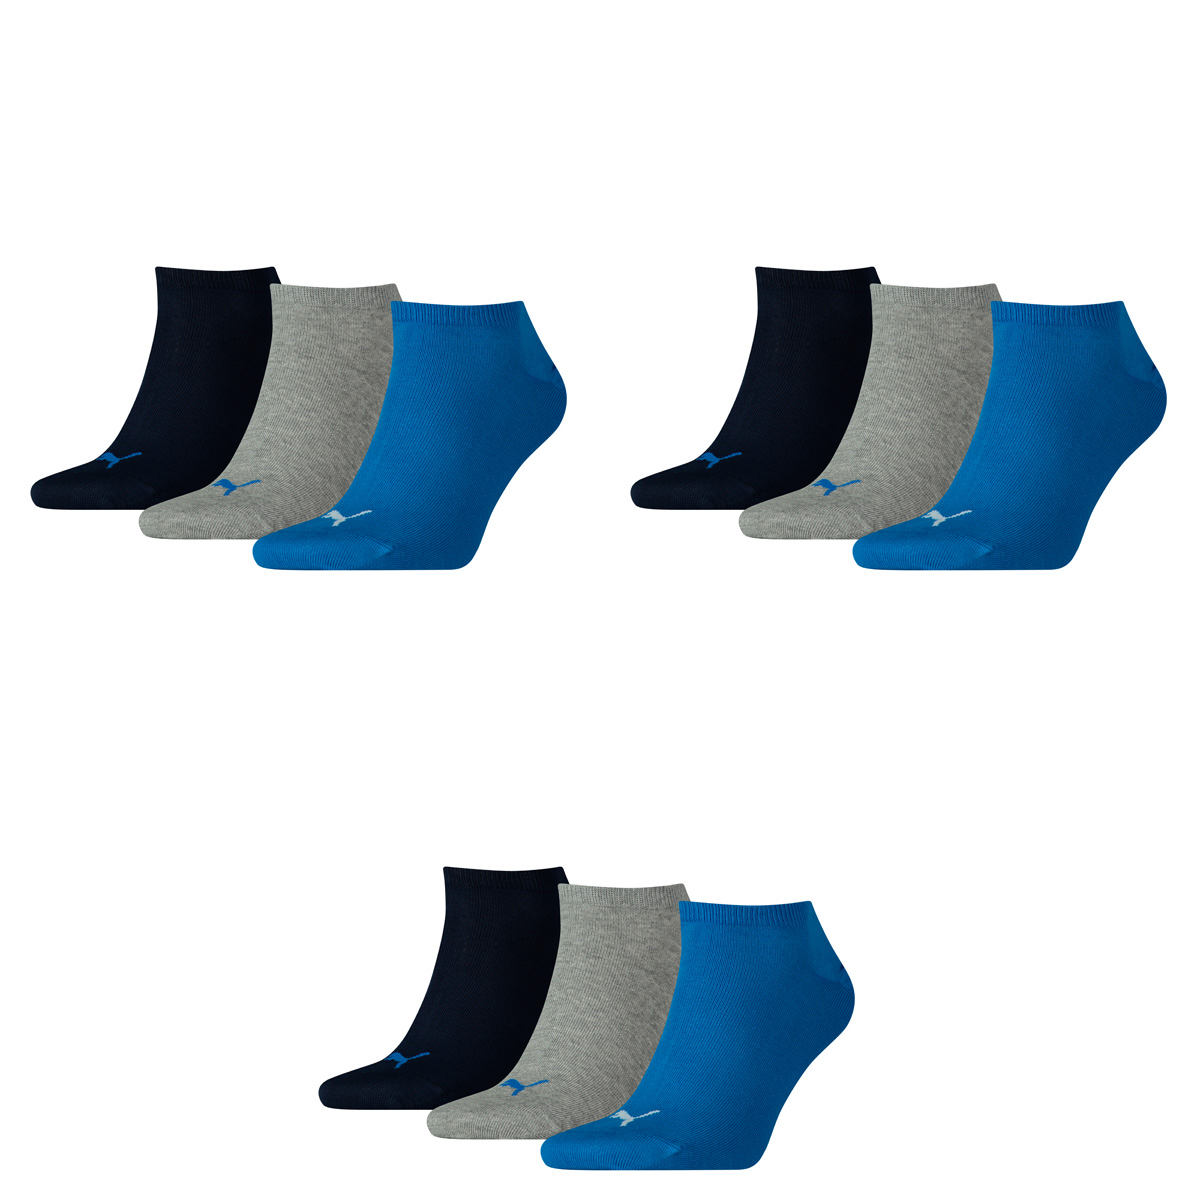 PUMA Herren UNISEX SNEAKER PLAIN 3P Socken, blue/Grey melange, 39-42 (3er Pack)